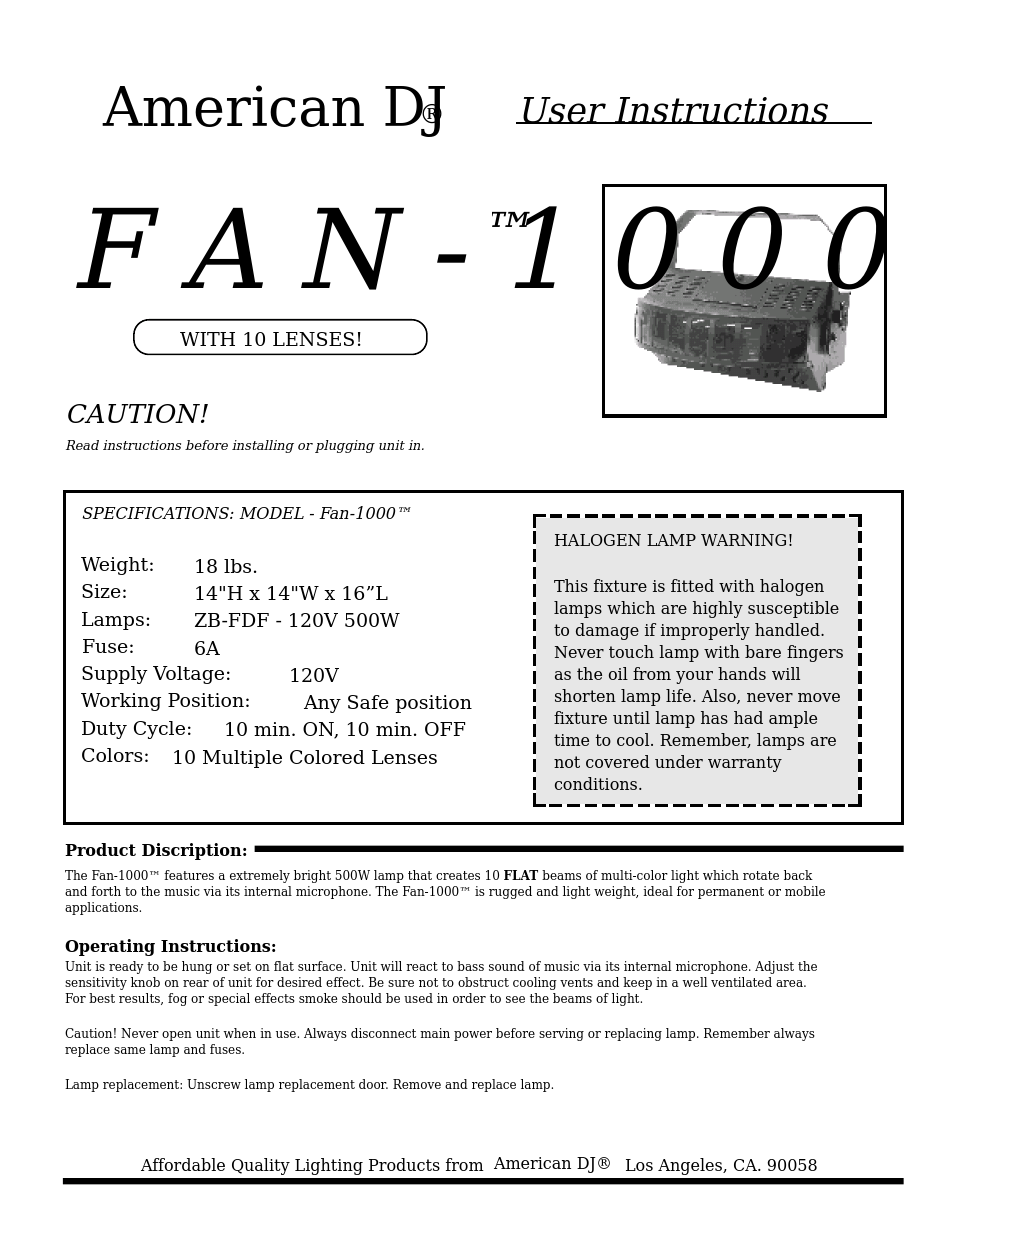 Fan-1000